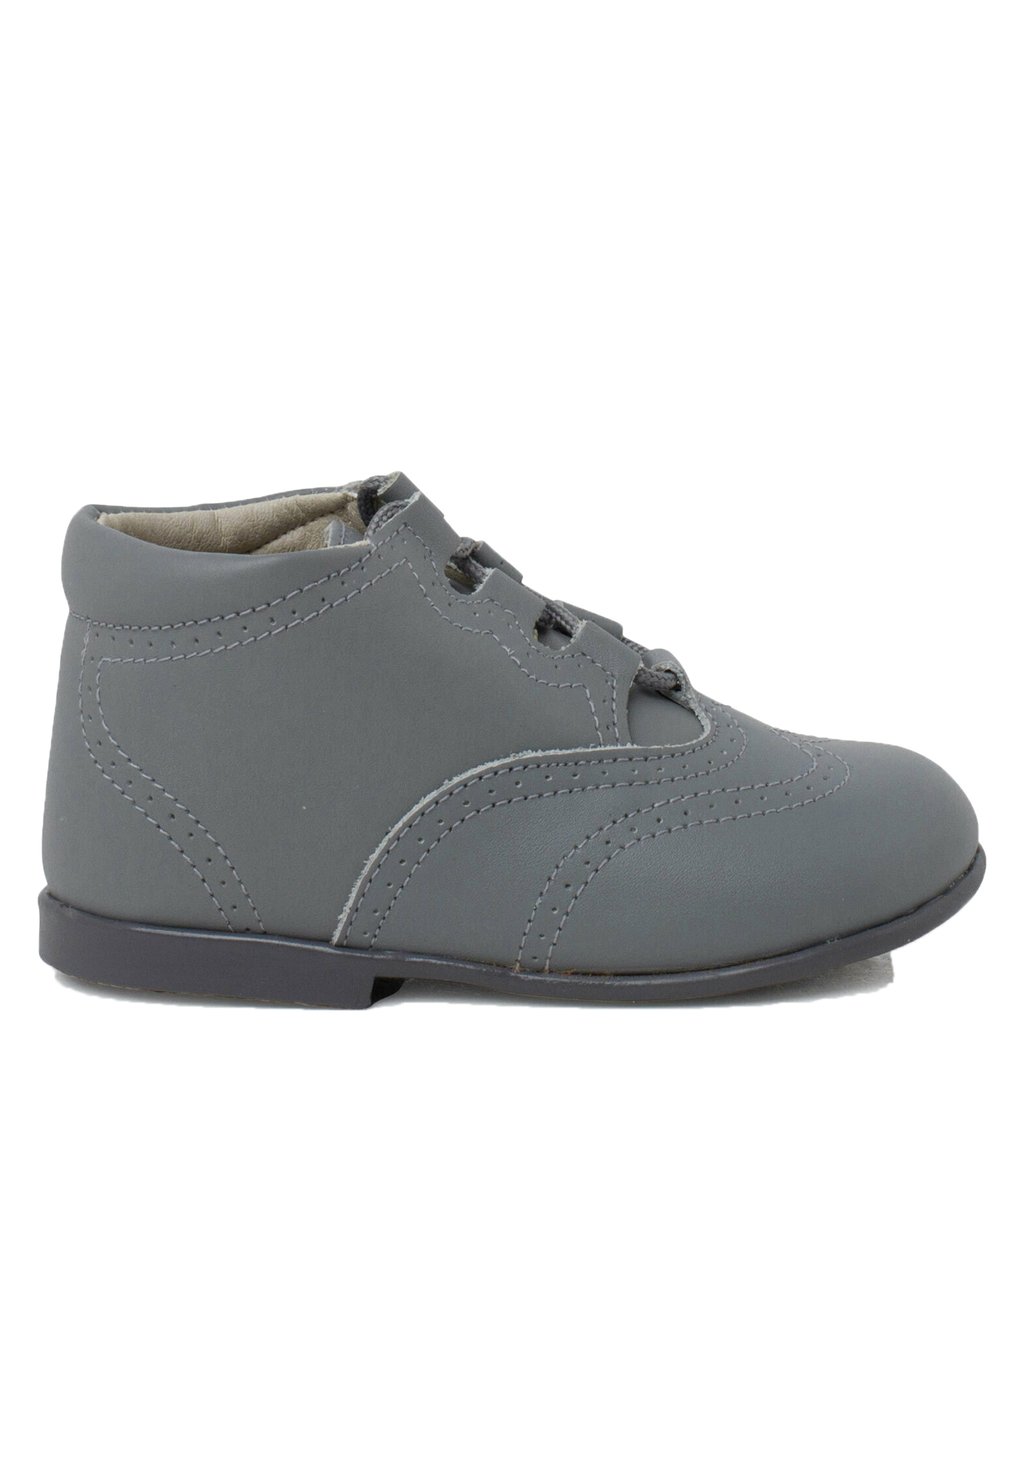 Обувь для обучения INGLESITO Pisamonas, цвет gris claro обувь для обучения inglesito pisamonas цвет gris claro